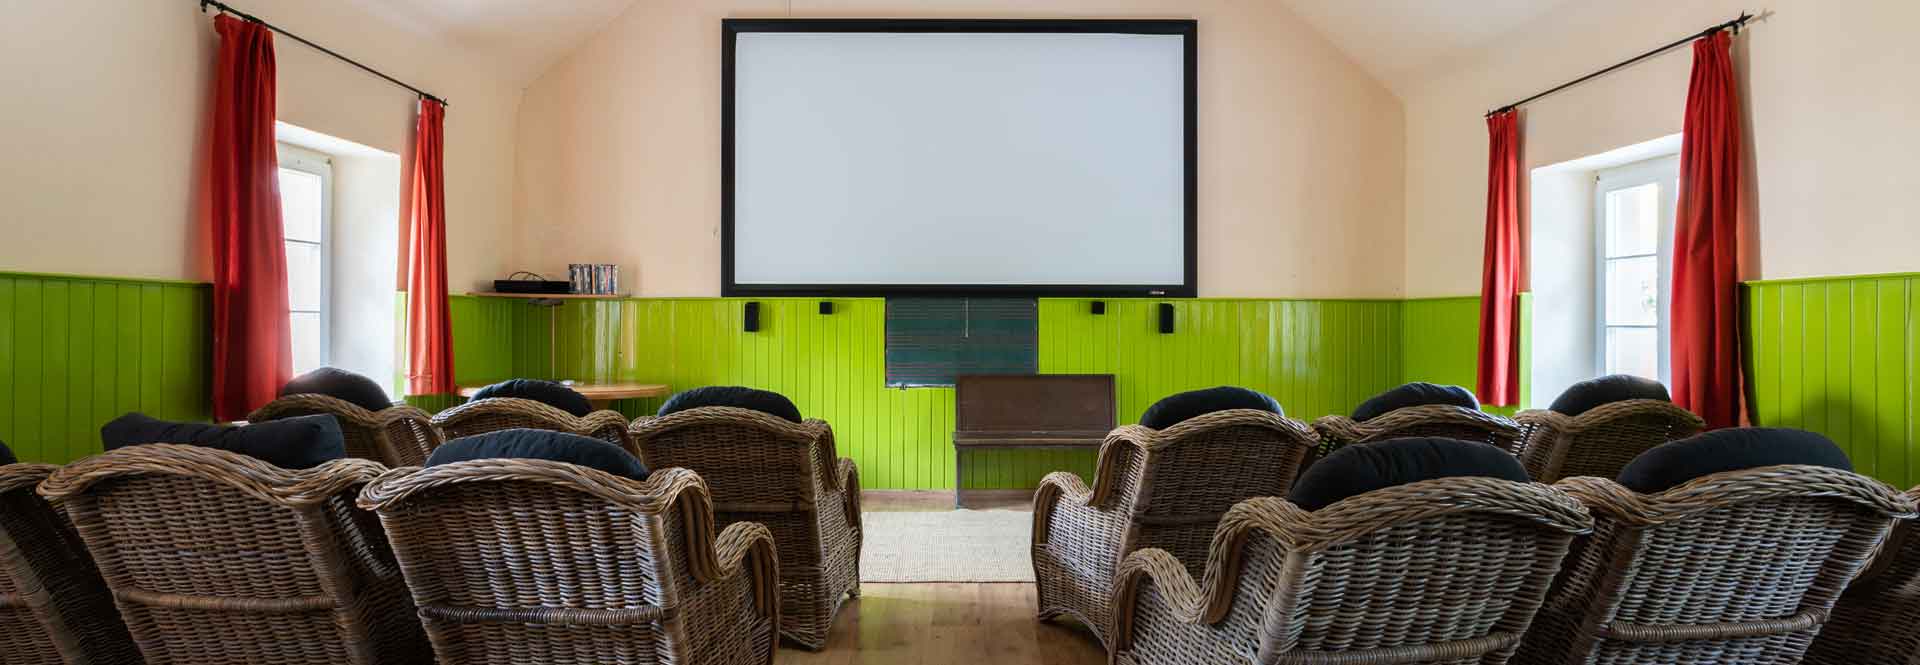 bioscoop met groot scherm en luie stoelen